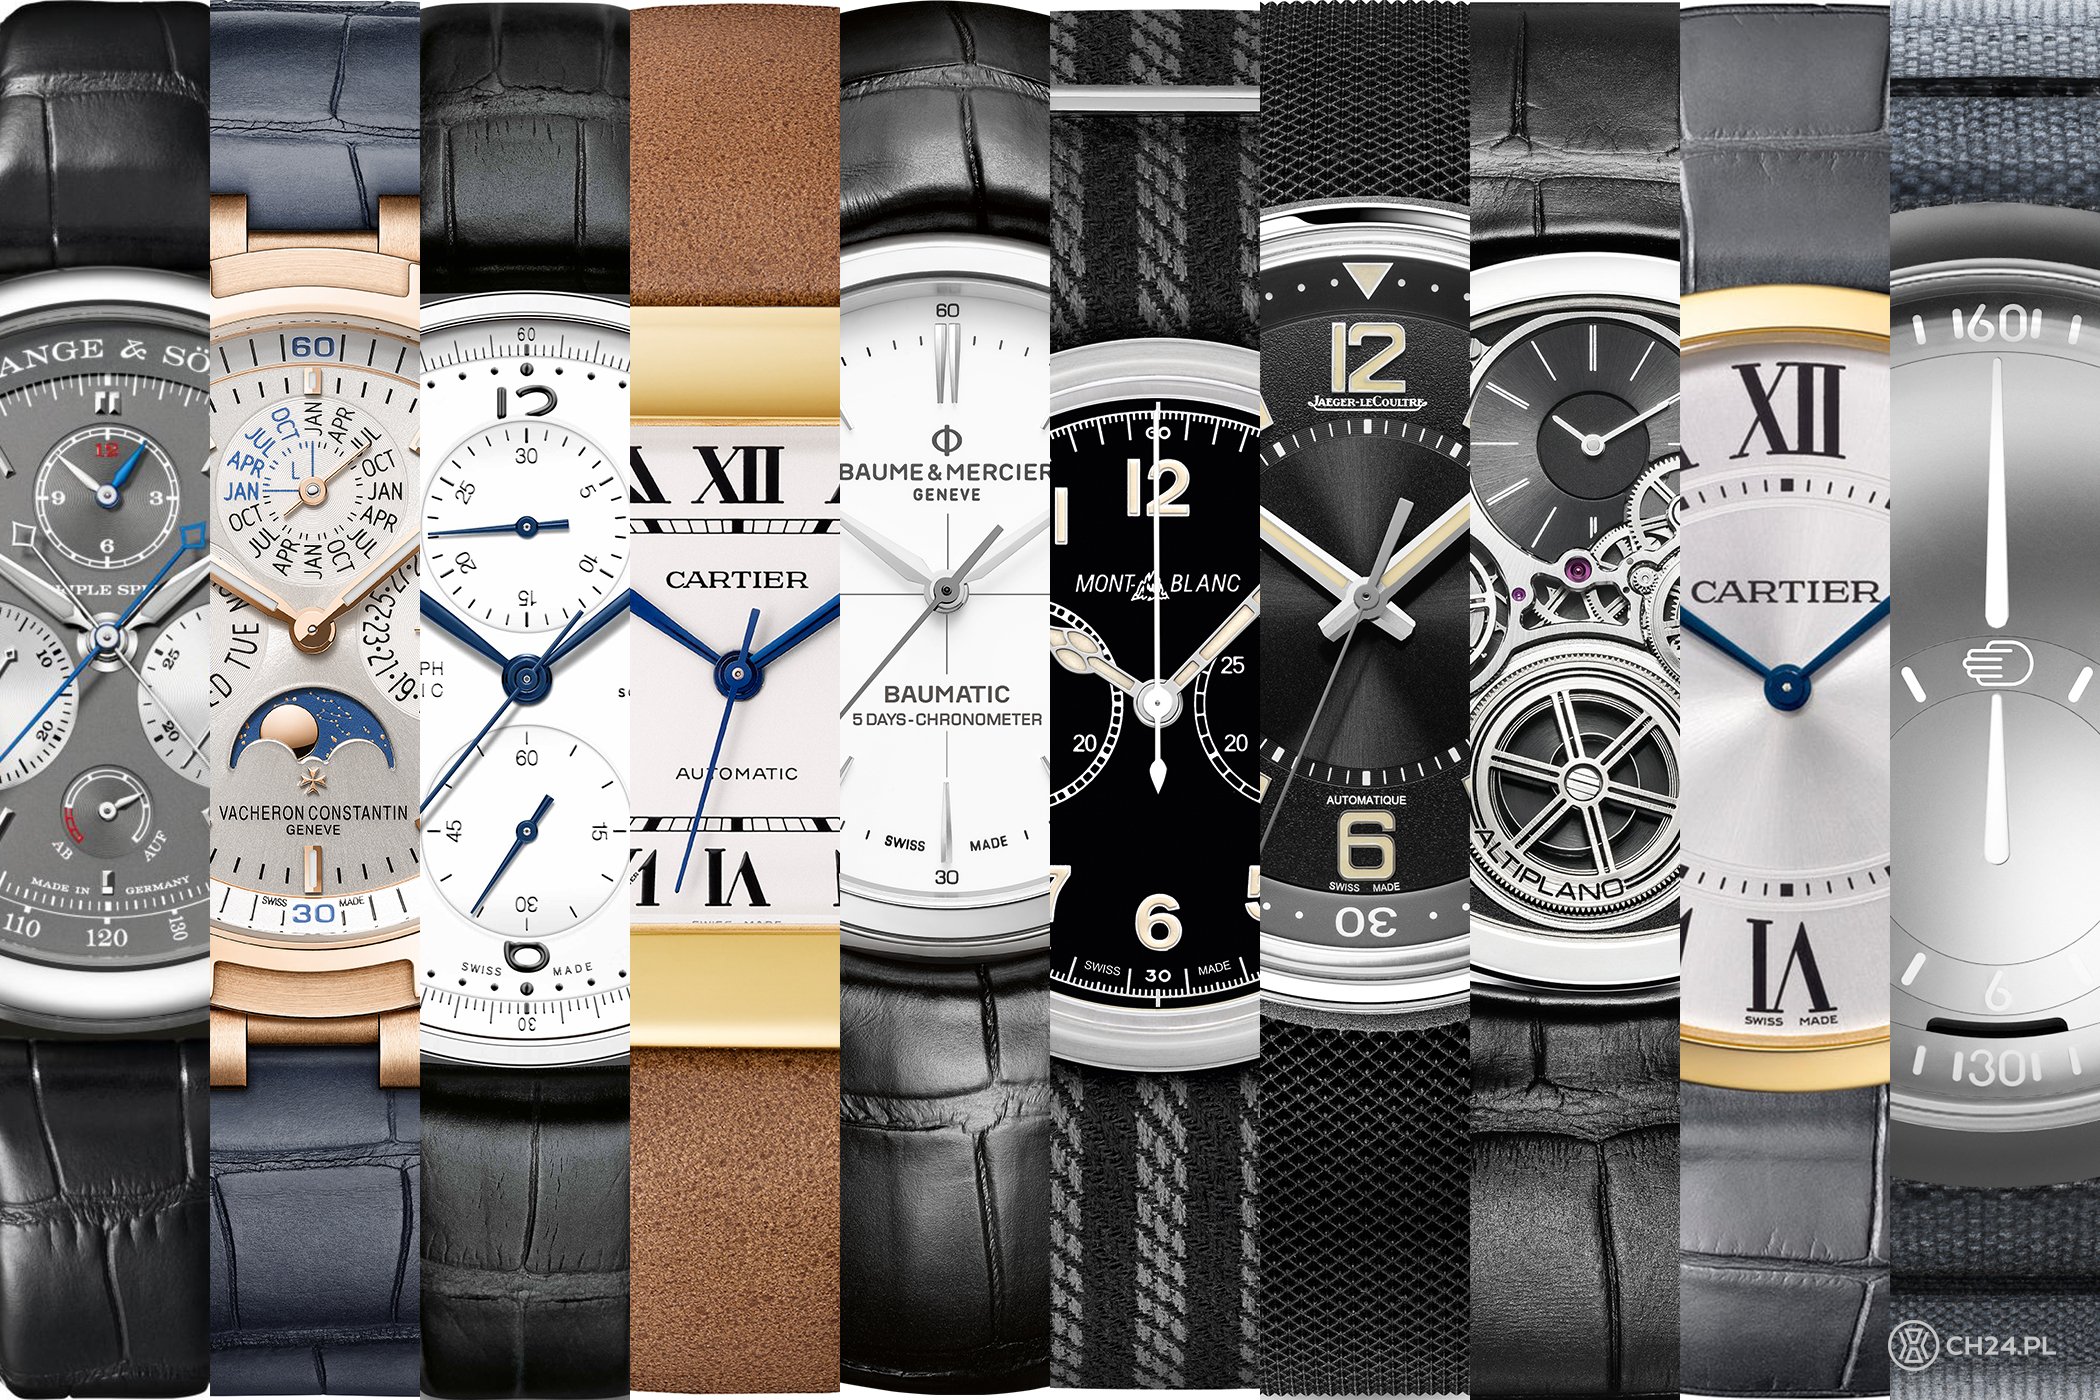 ALLTIME часы. Часы ALLTIME оборудование в формате острова. Cartier watch Part 24 pl 08. Сайт олтайм часы